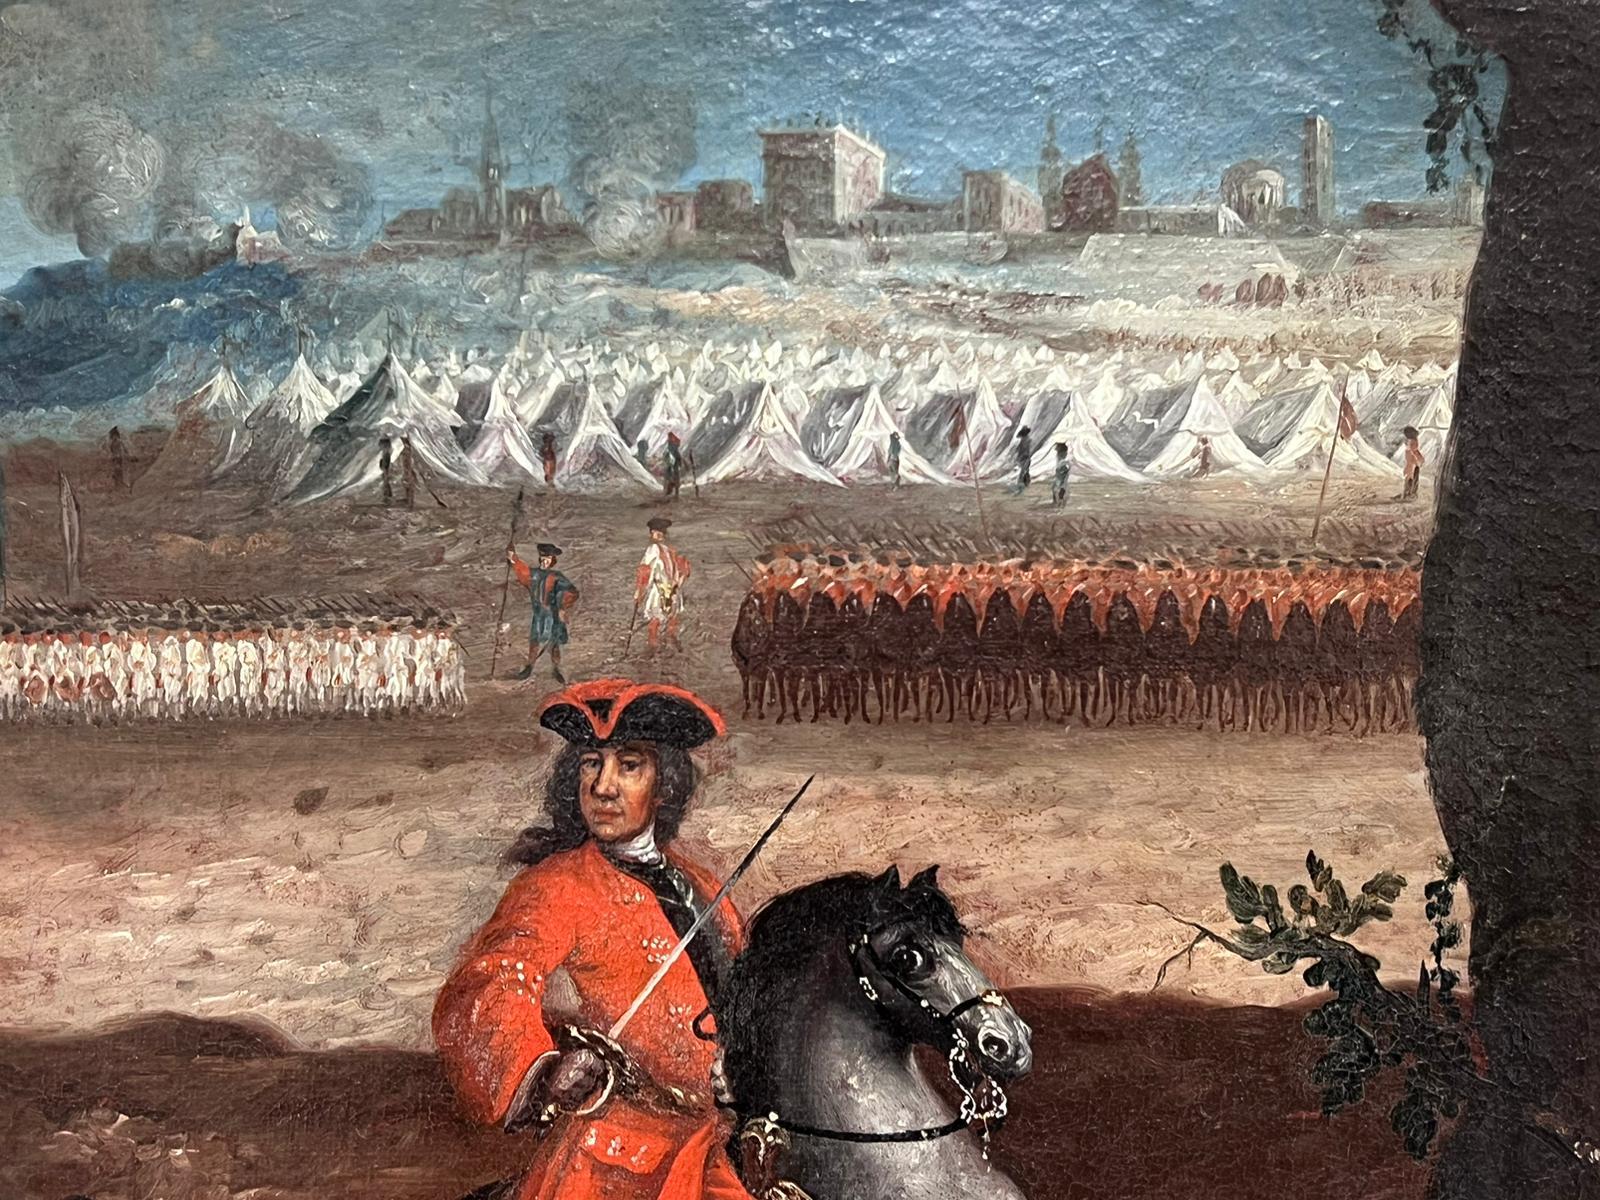 Französisches Ölgemälde, Kavallerie-Militärschlachten-Encampment-Soldaten zu Pferd, 18. Jahrhundert (Alte Meister), Painting, von 1700's French Old Master